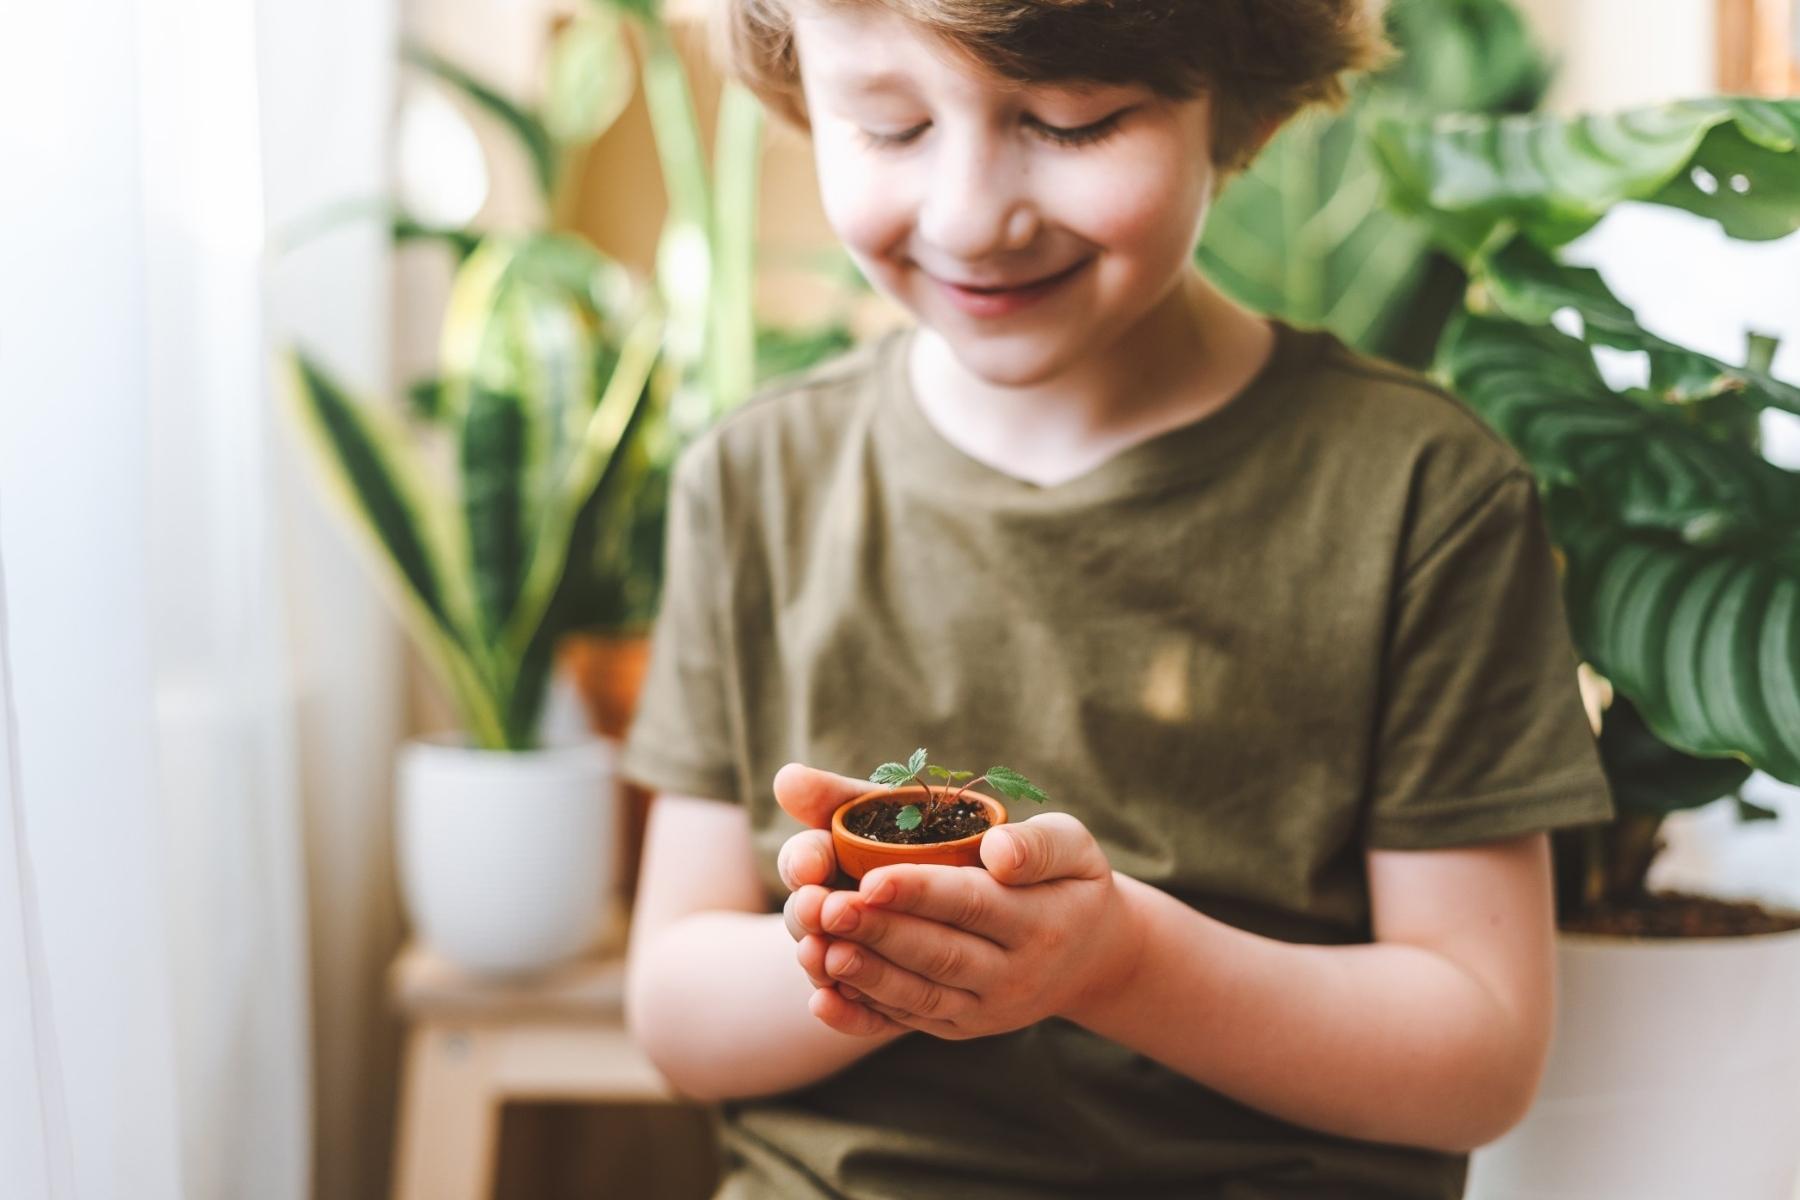 Child nurturing a plant